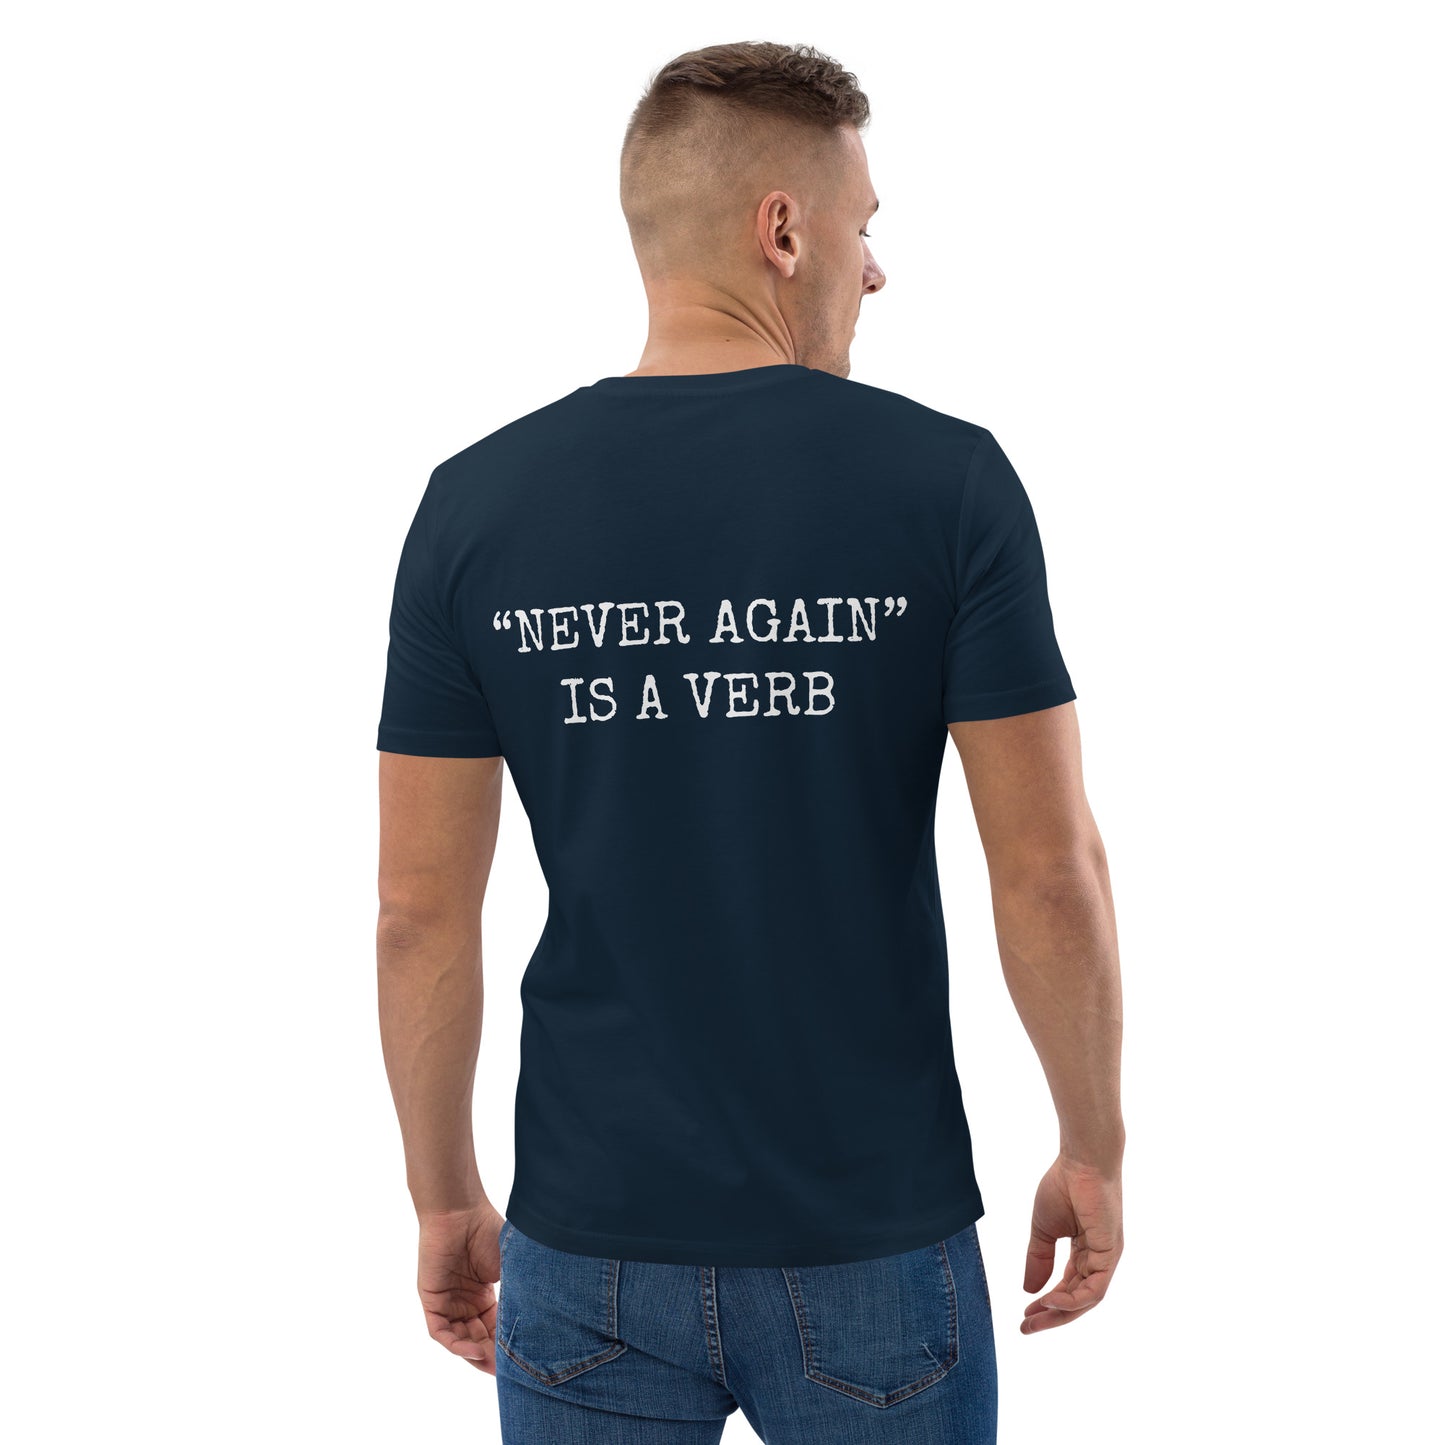 T-shirt - "Never Again" Is a Verb